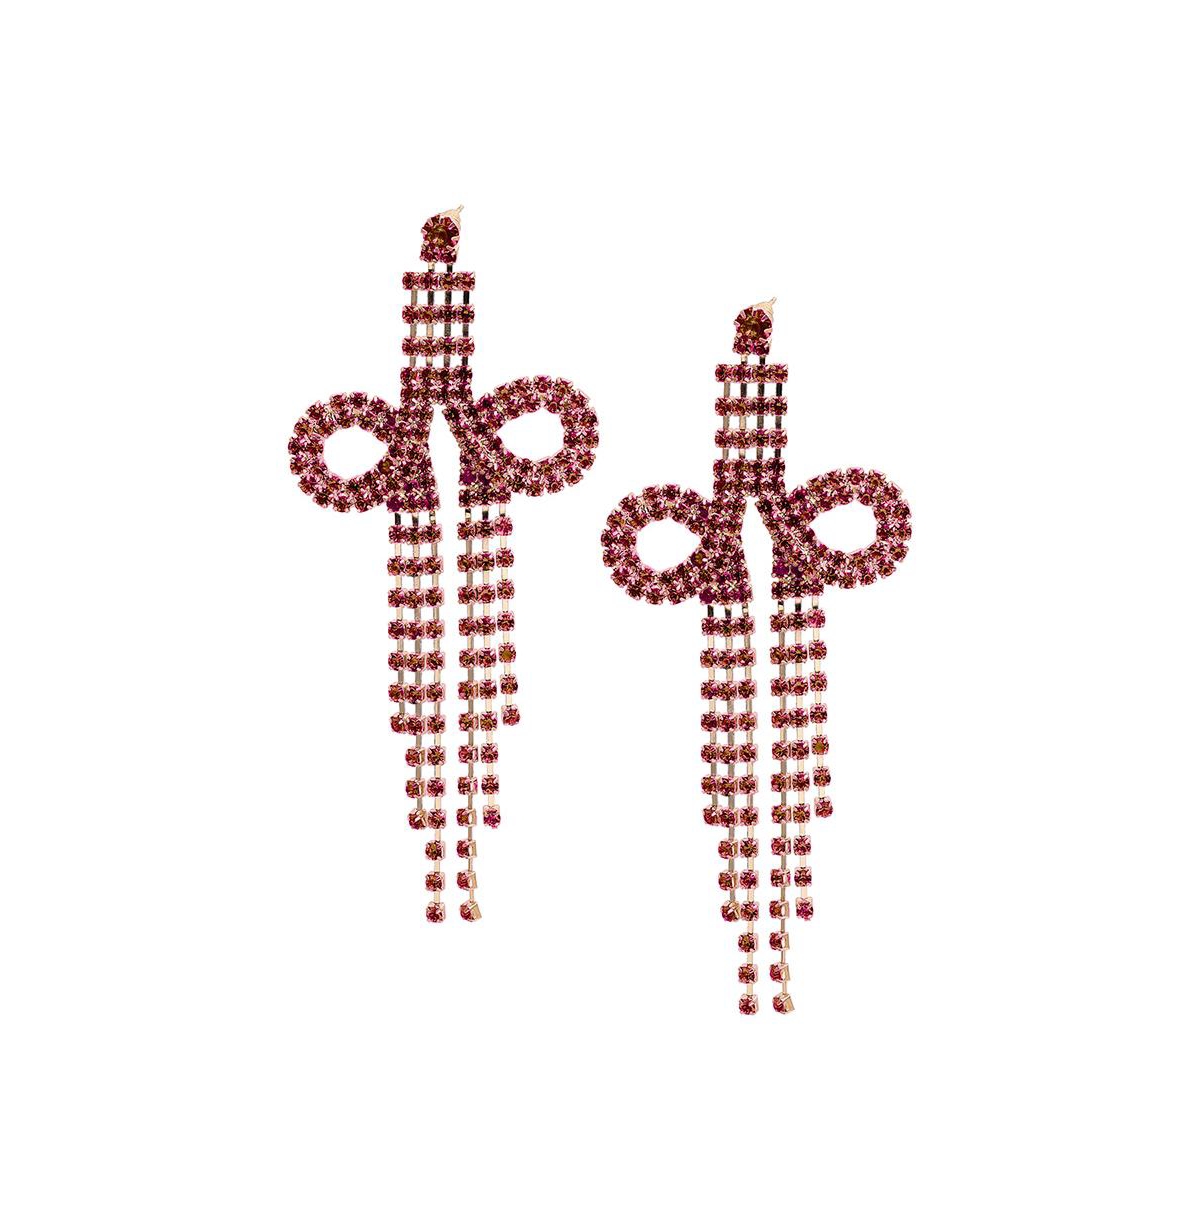 Sohi Women's Bling Drop Earrings In Red